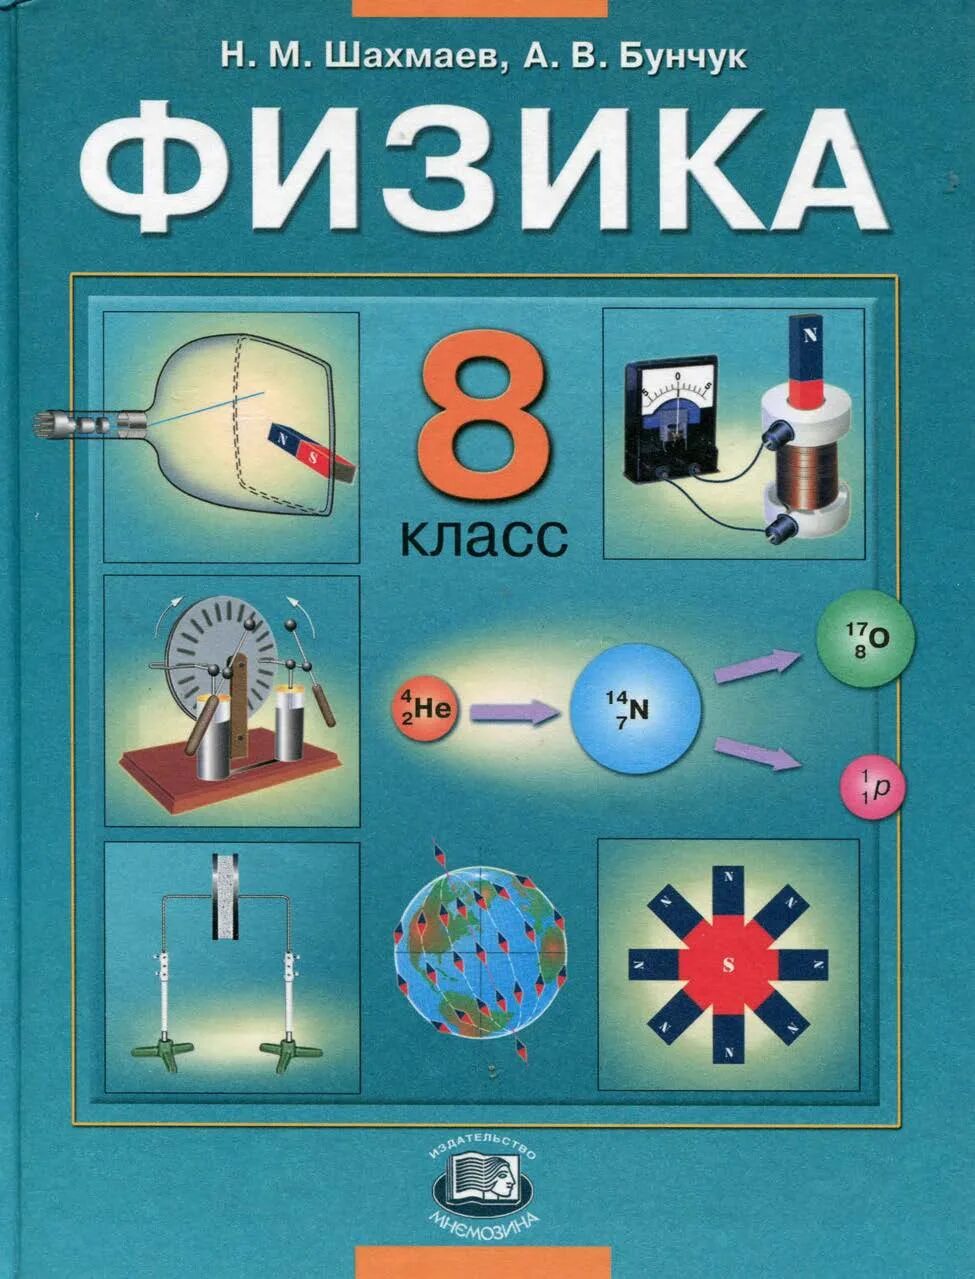 Учебник физики. Учебник физики 8 класс. 8 Класс. Физика.. С В физике.